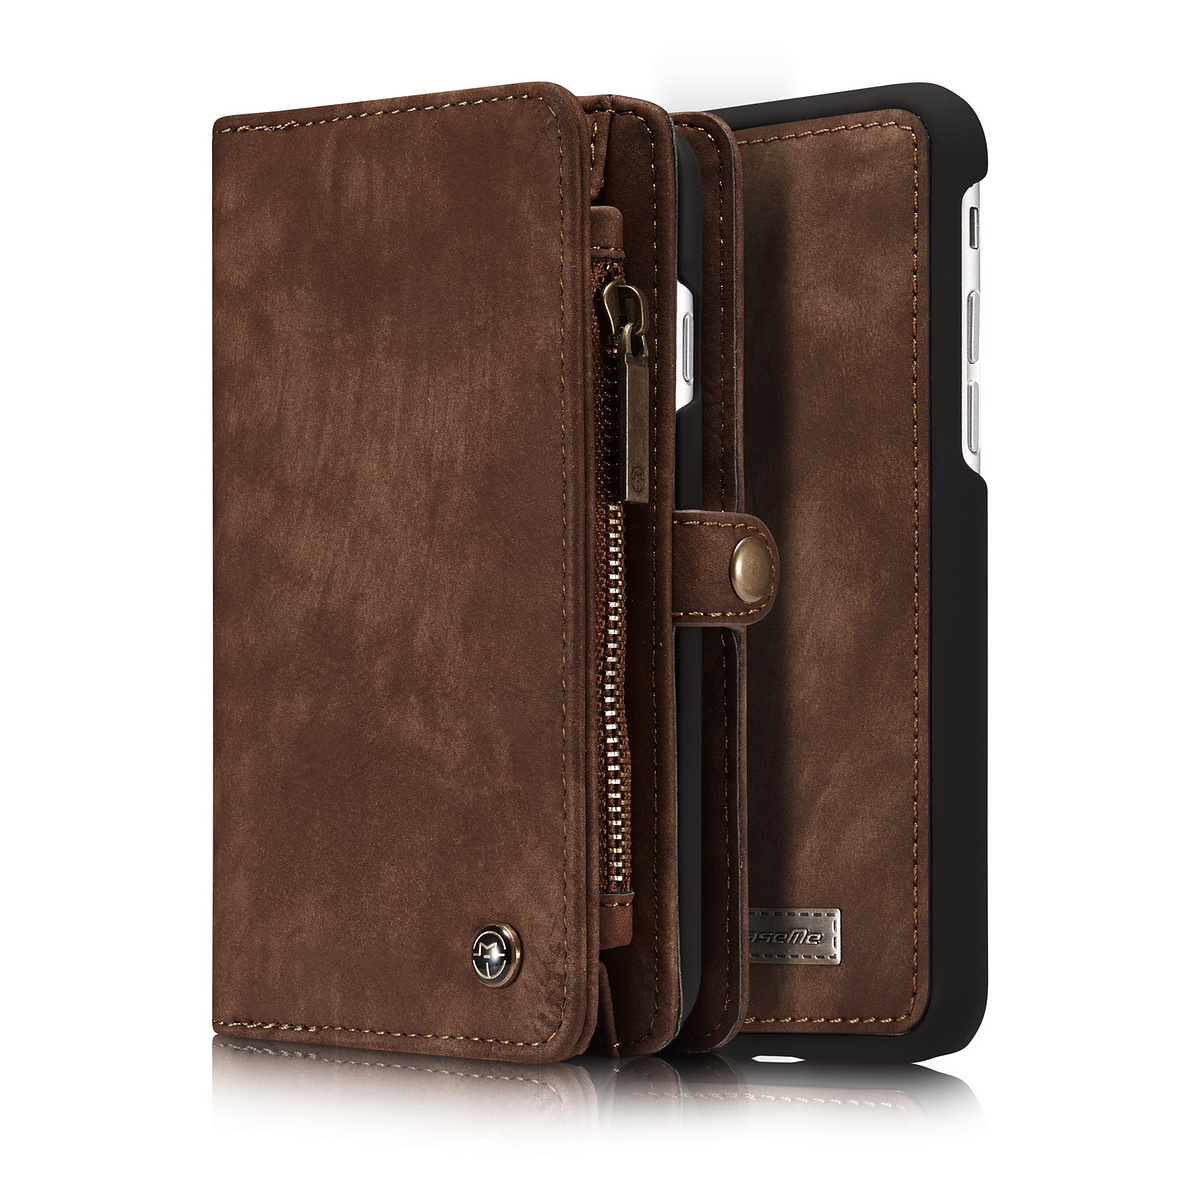 CaseMe plånboksfodral med magnetskal, iPhone 7/8, brun